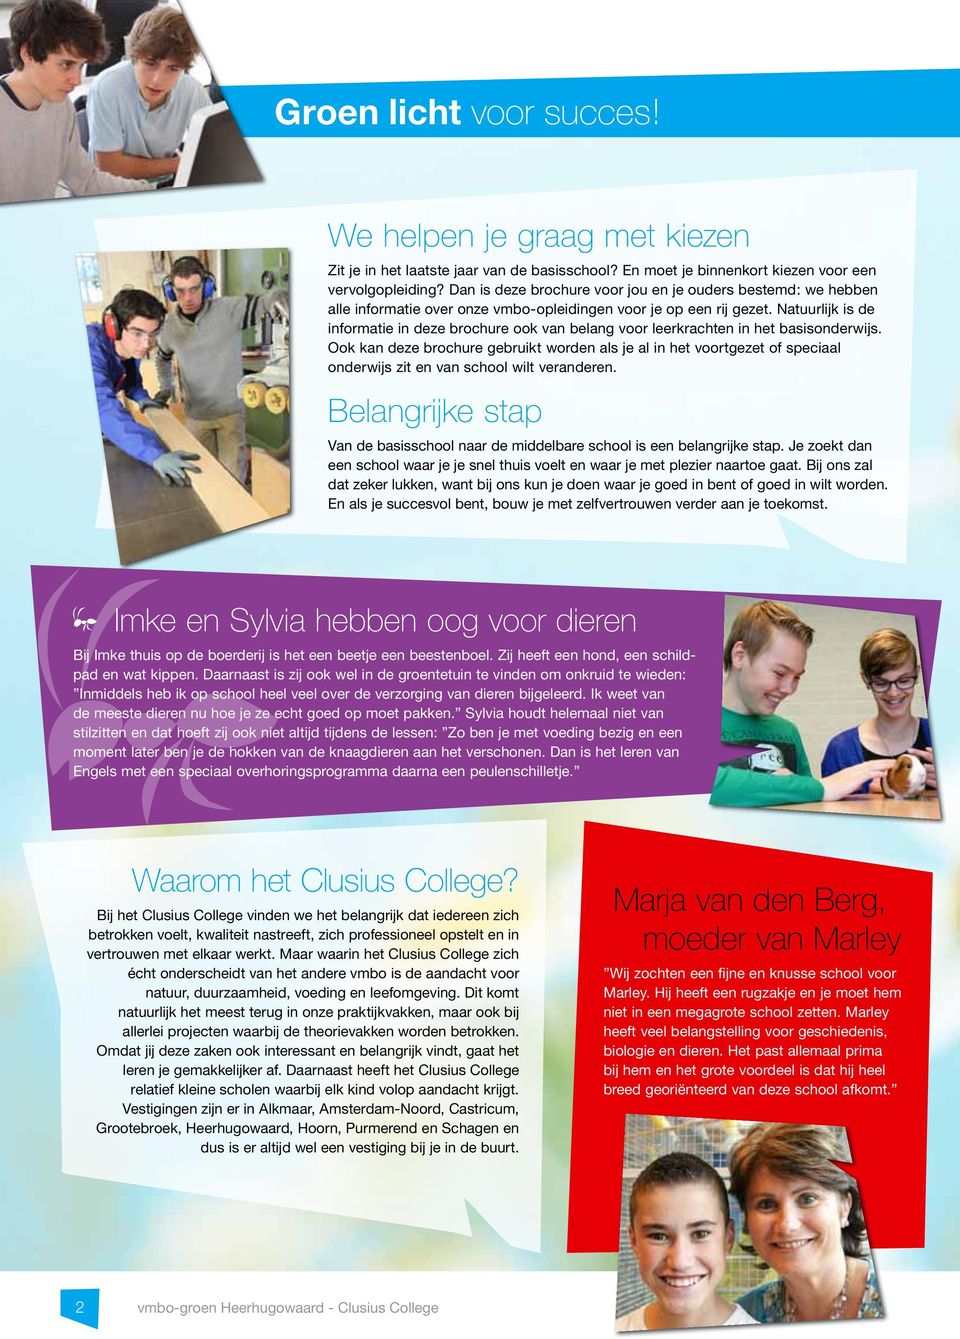 Natuurlijk is de informatie in deze brochure ook van belang voor leerkrachten in het basisonderwijs.